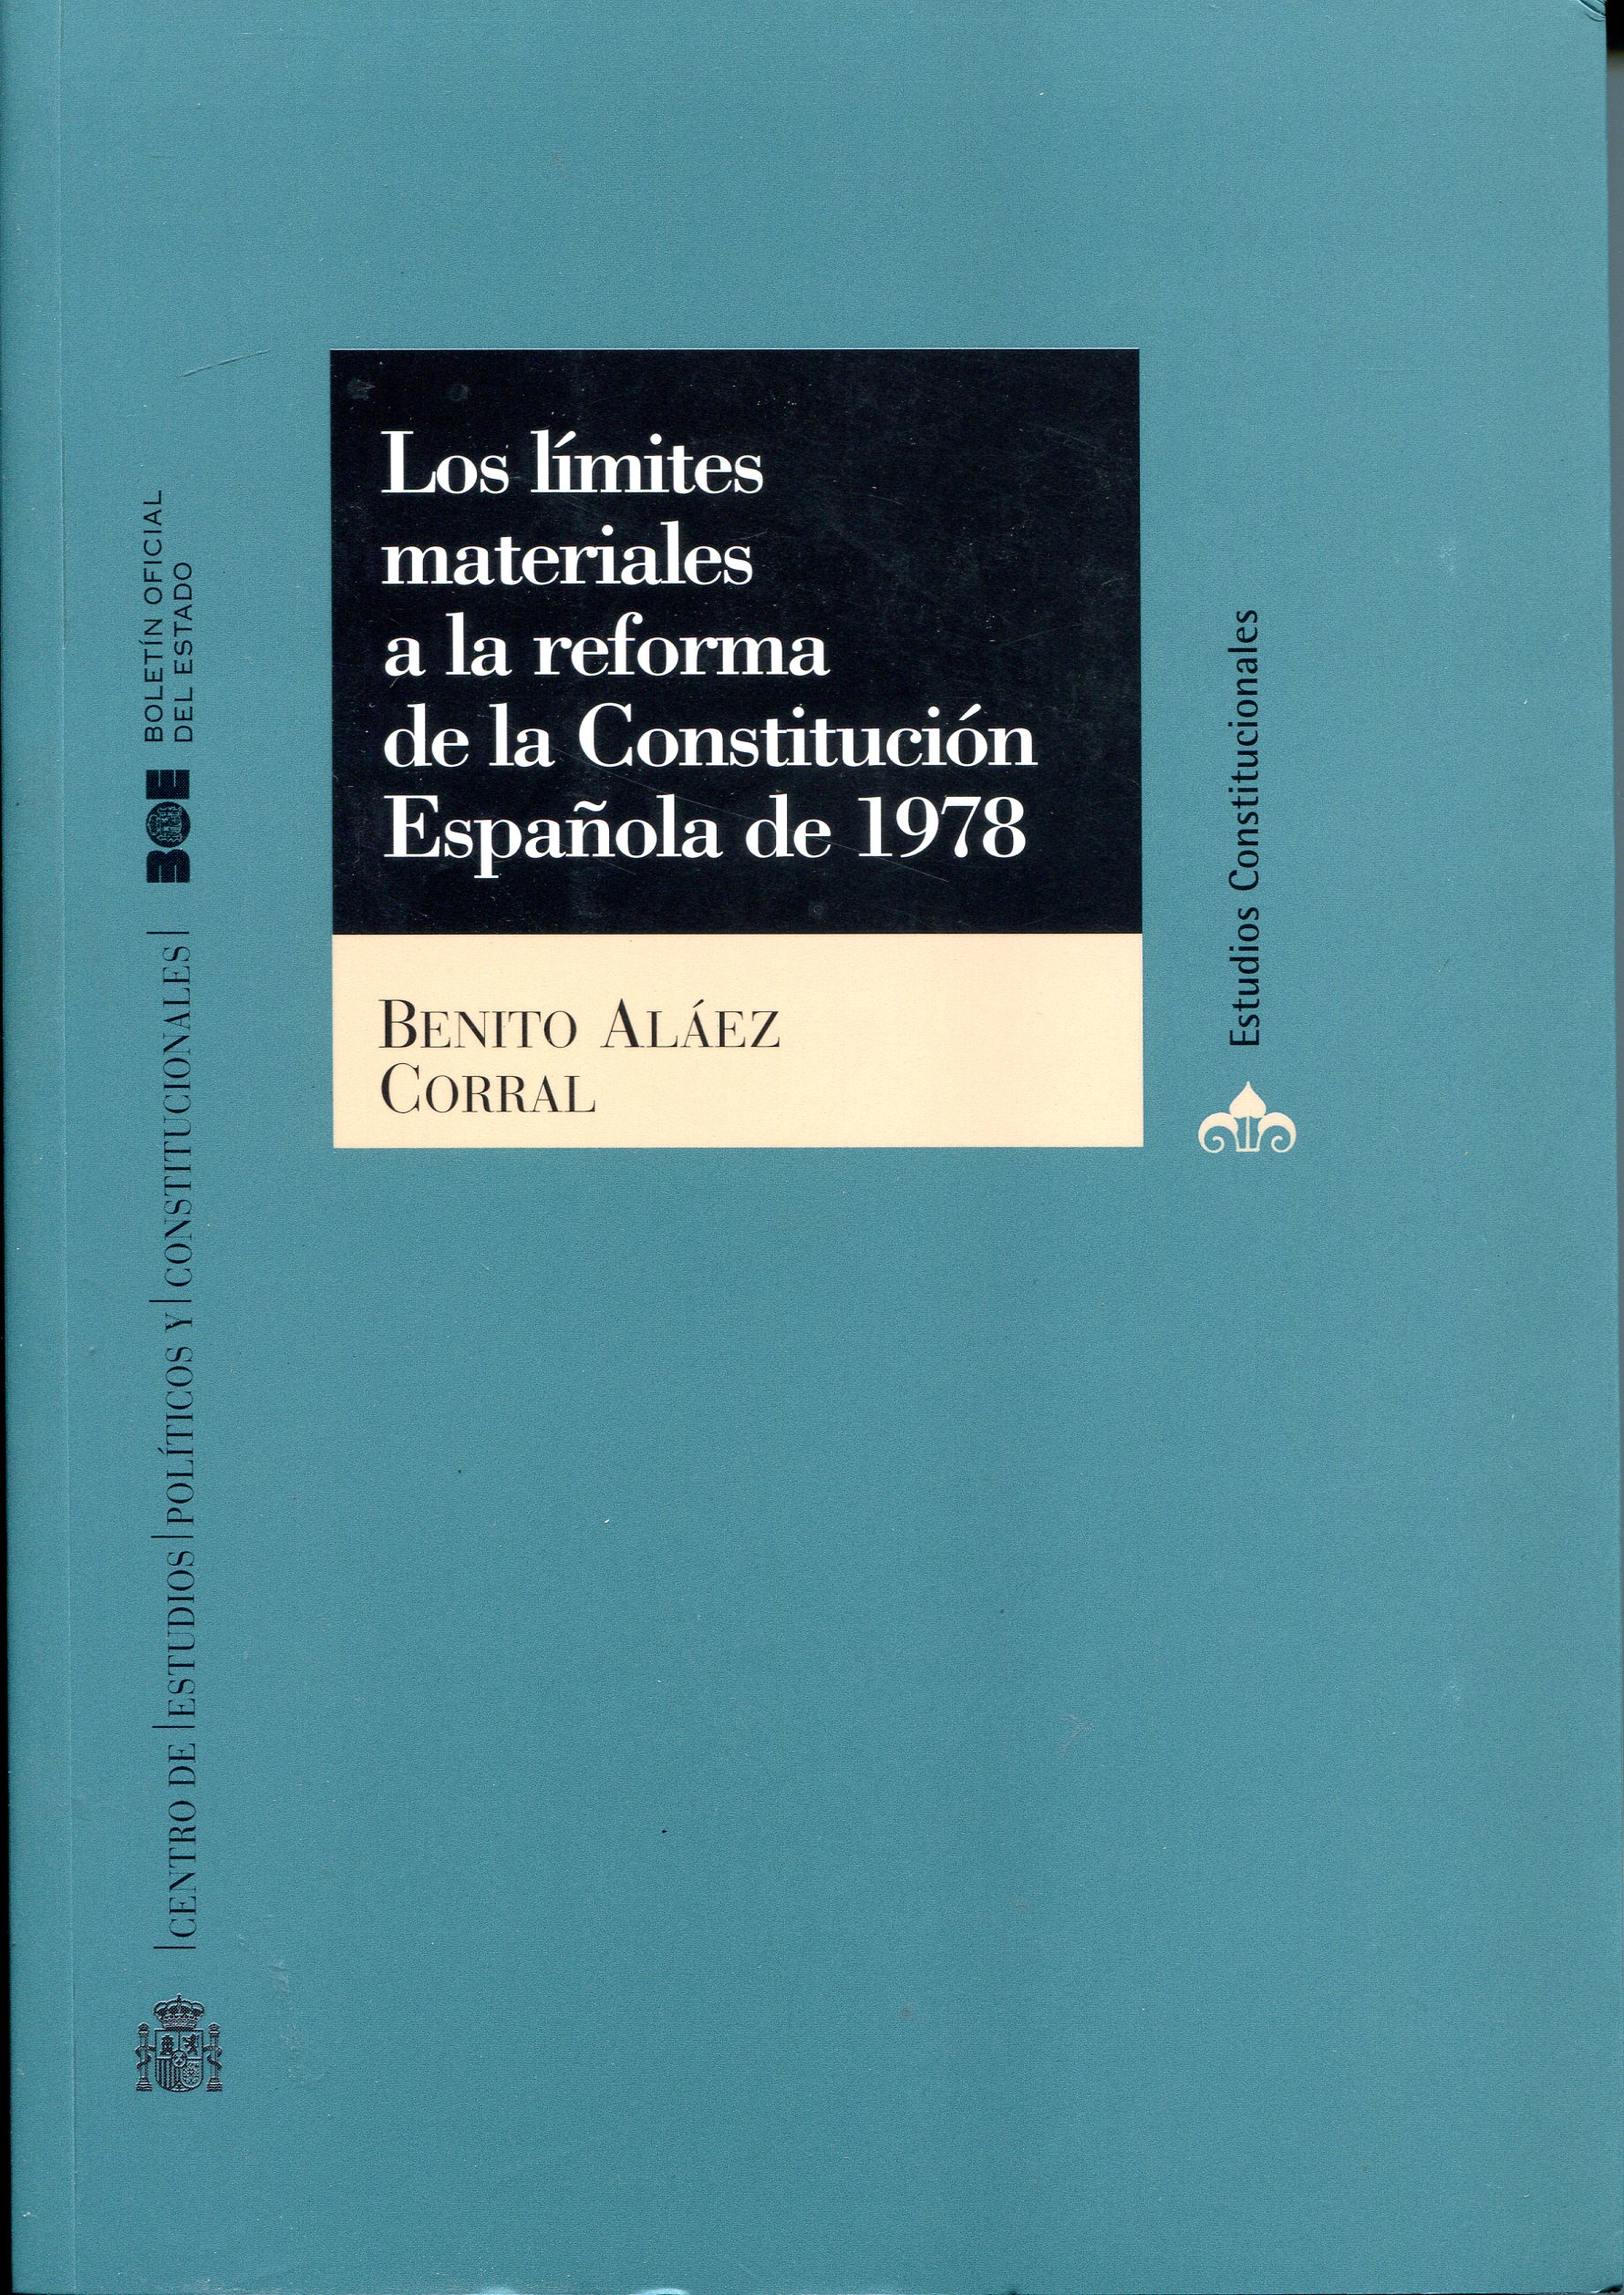 Los límites materiales a la reforma de la Constitución española de 1978